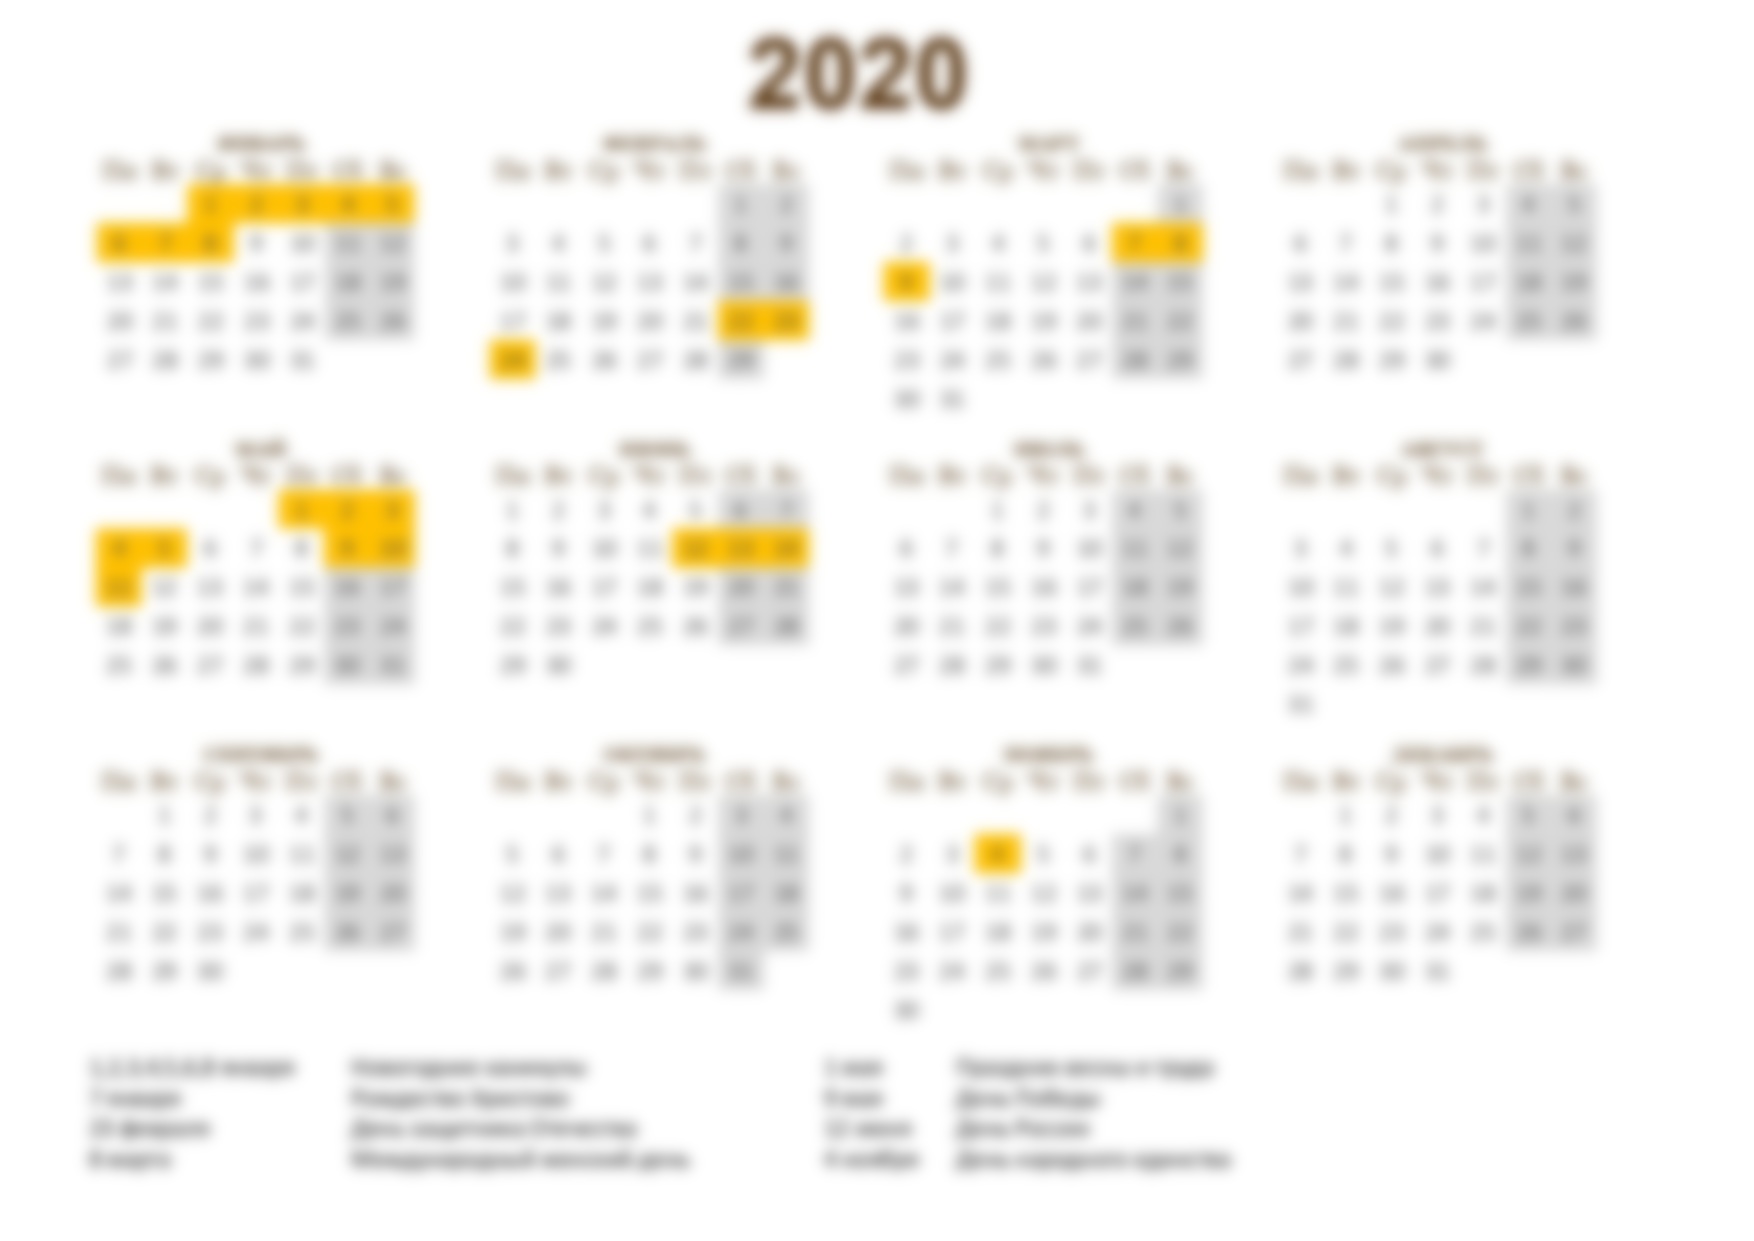 Профсоюзный календарь на 2020 год